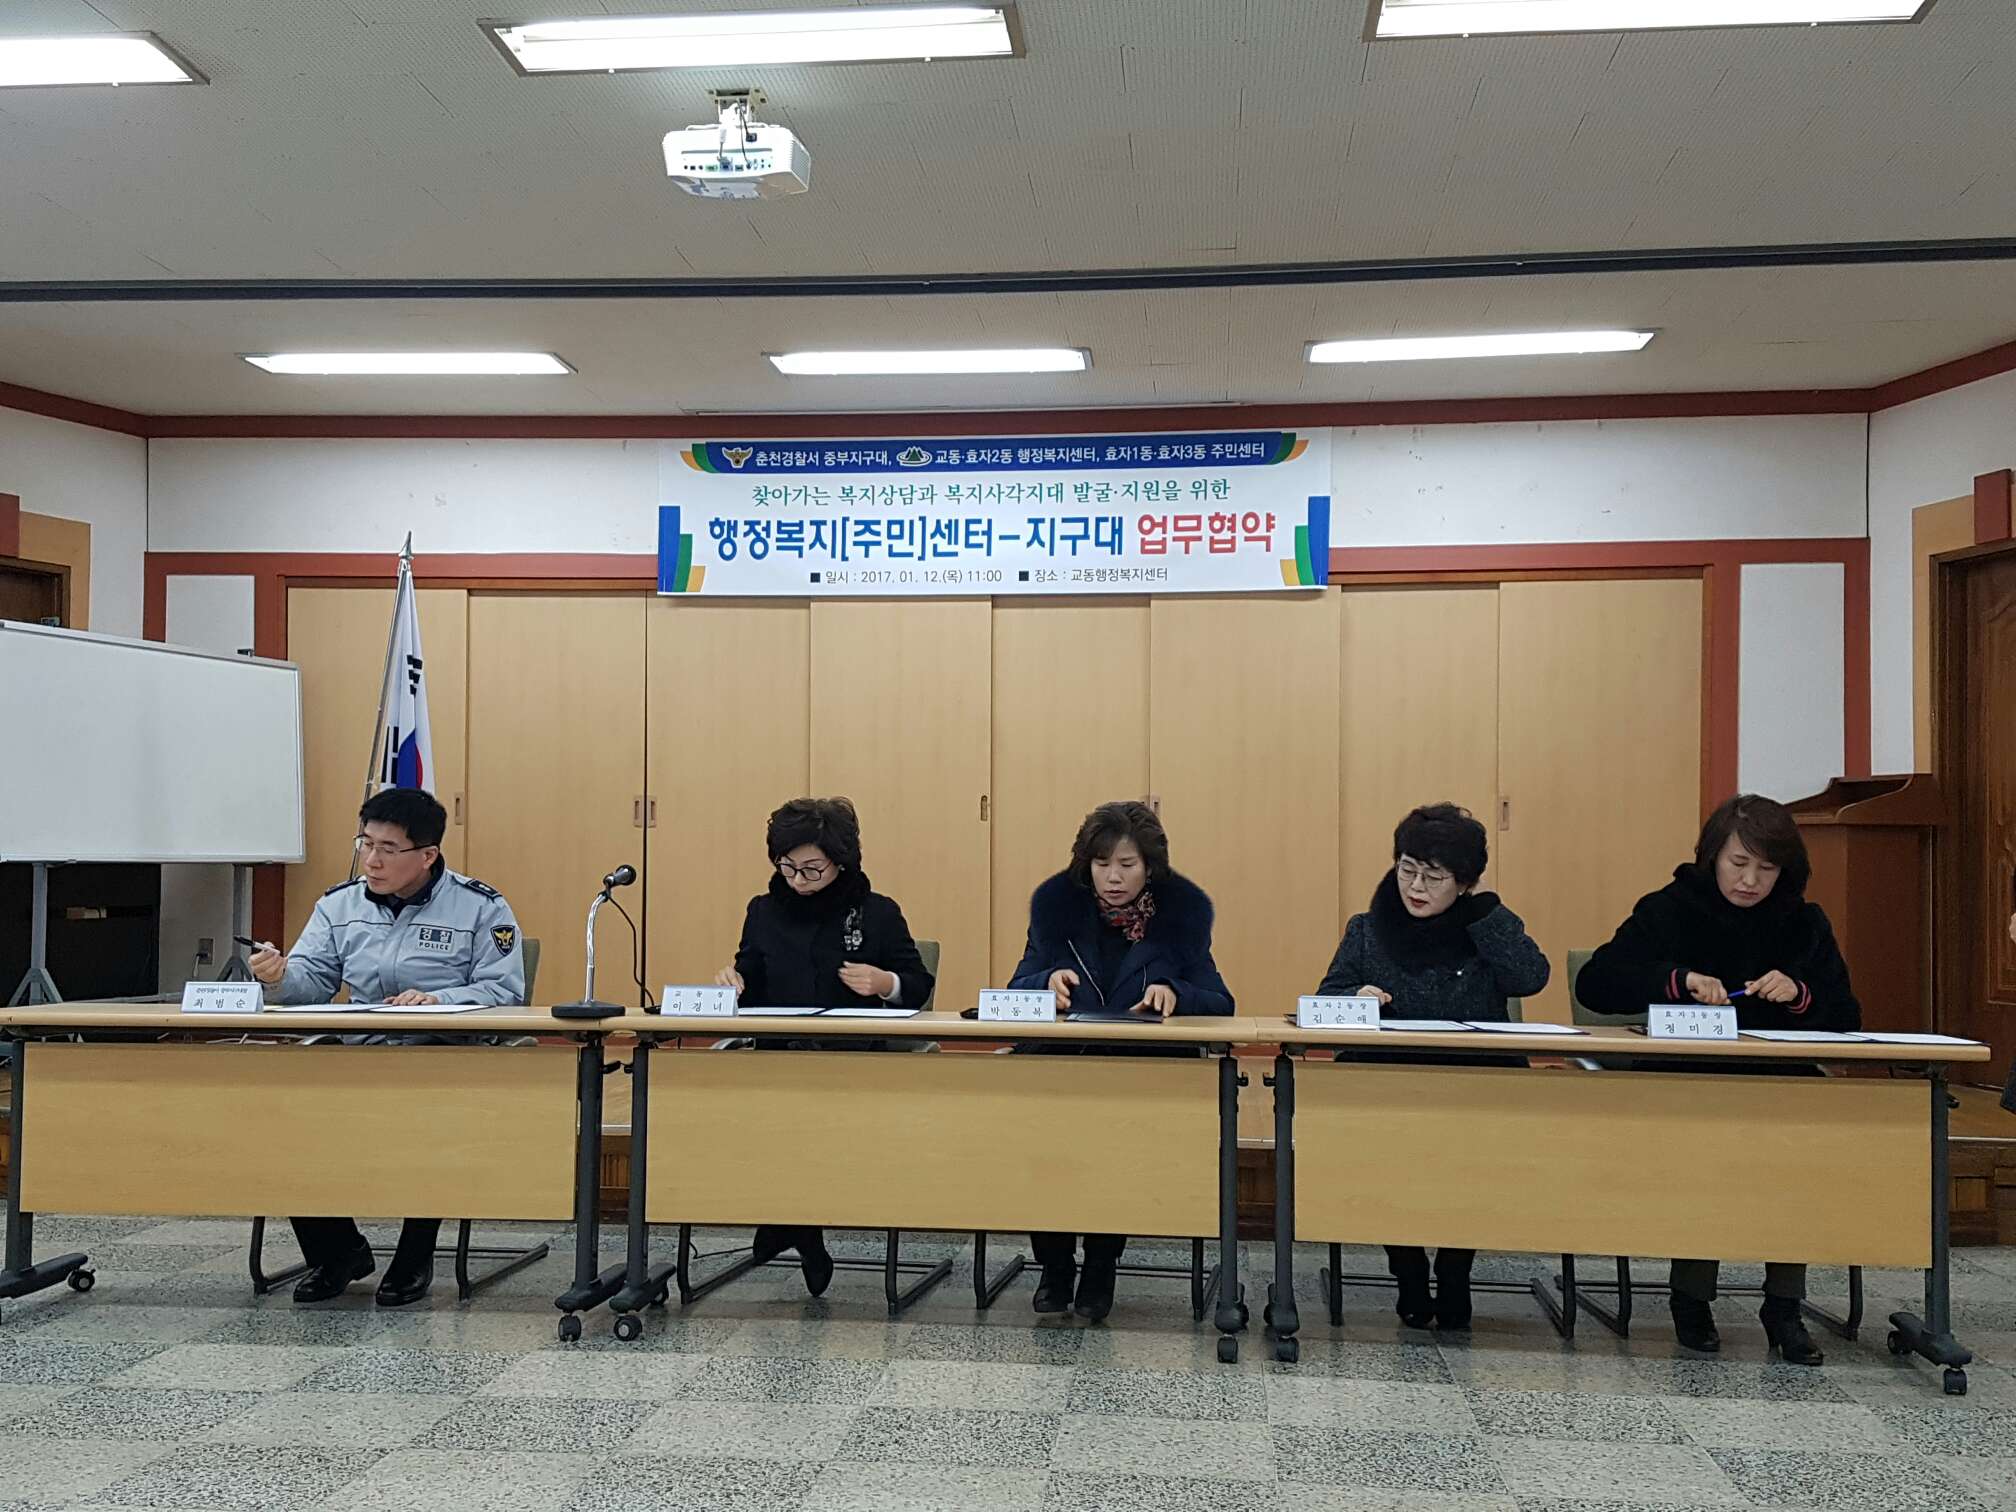 행정복지(주민)센터와 춘천경찰서 중부지구대 사회복지업무 협약식